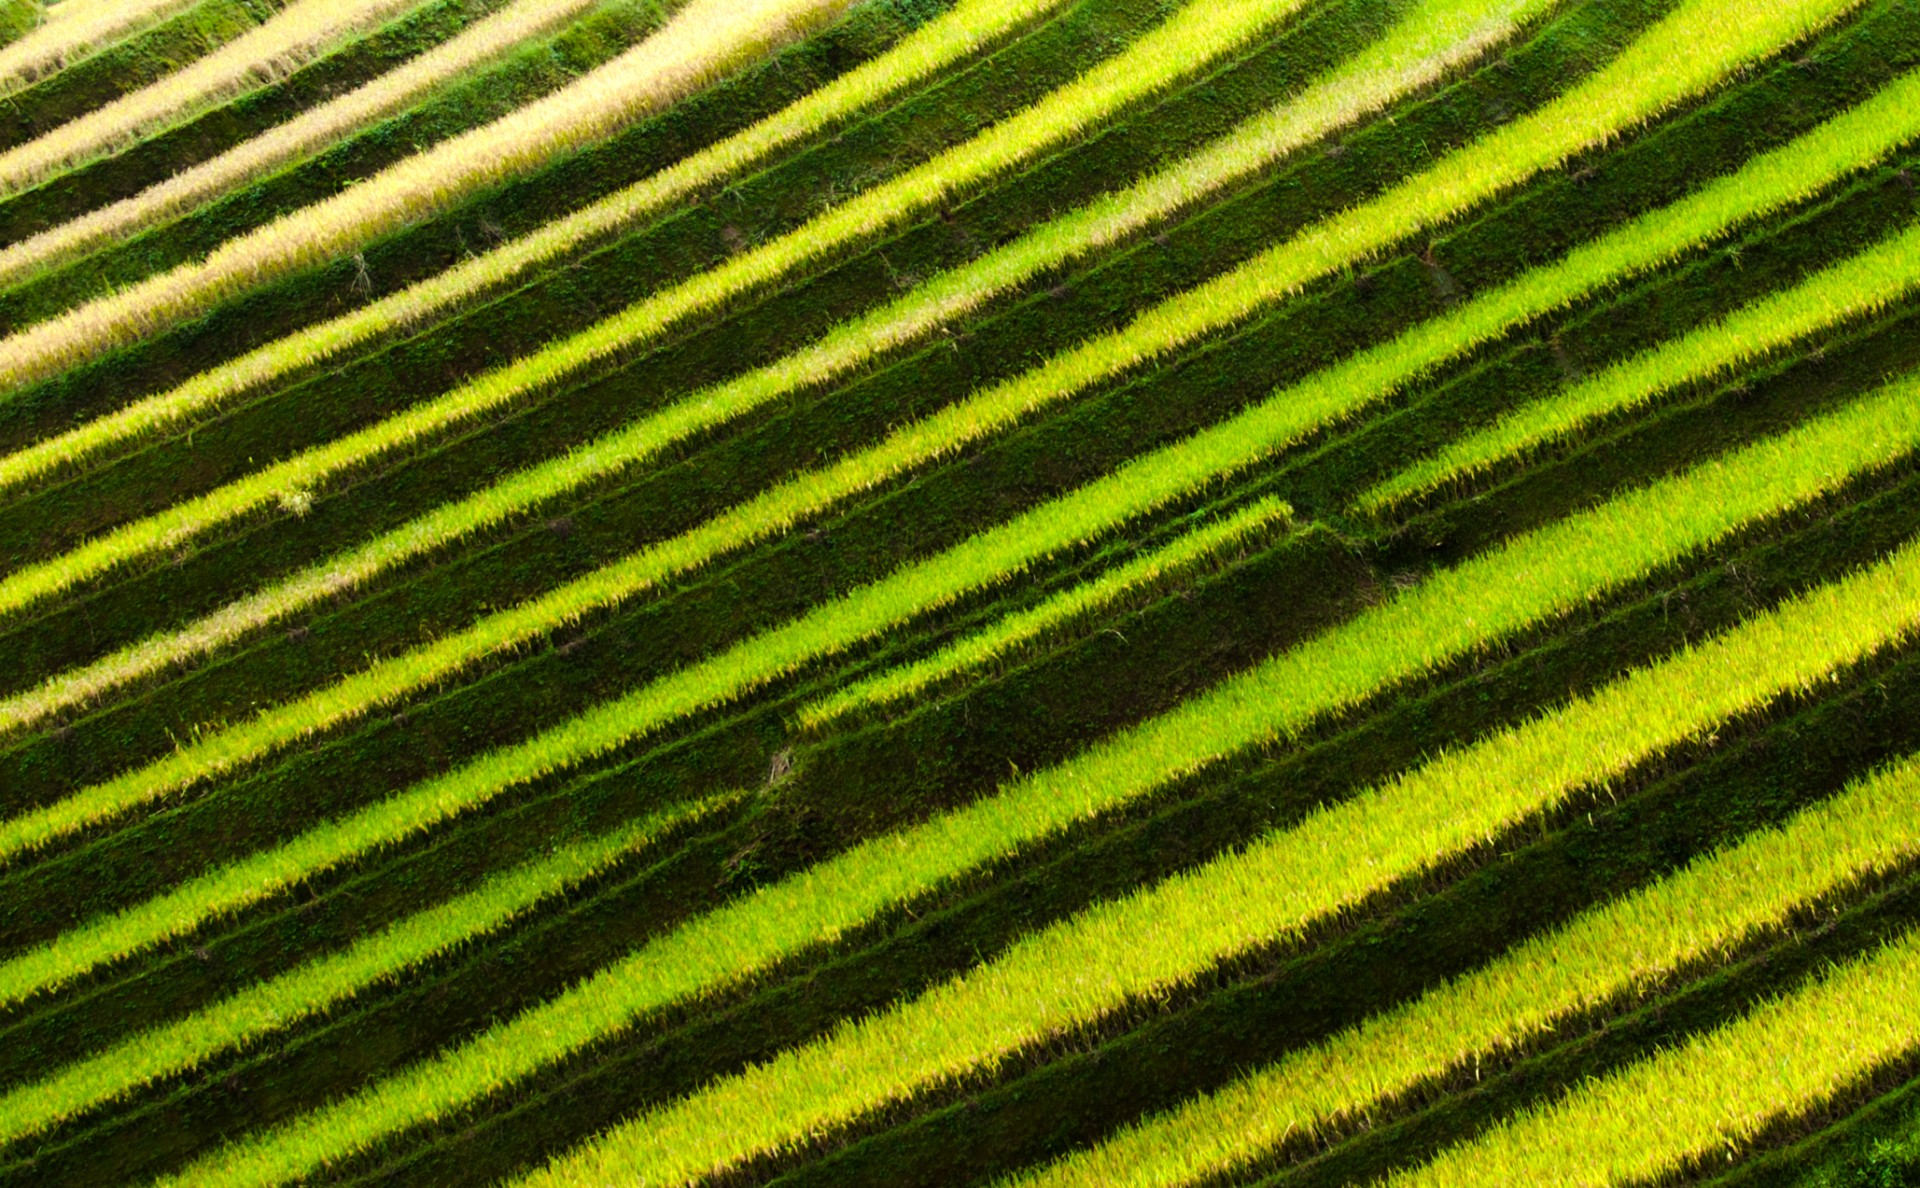 terraced fields mu cang chai yen bai free photo